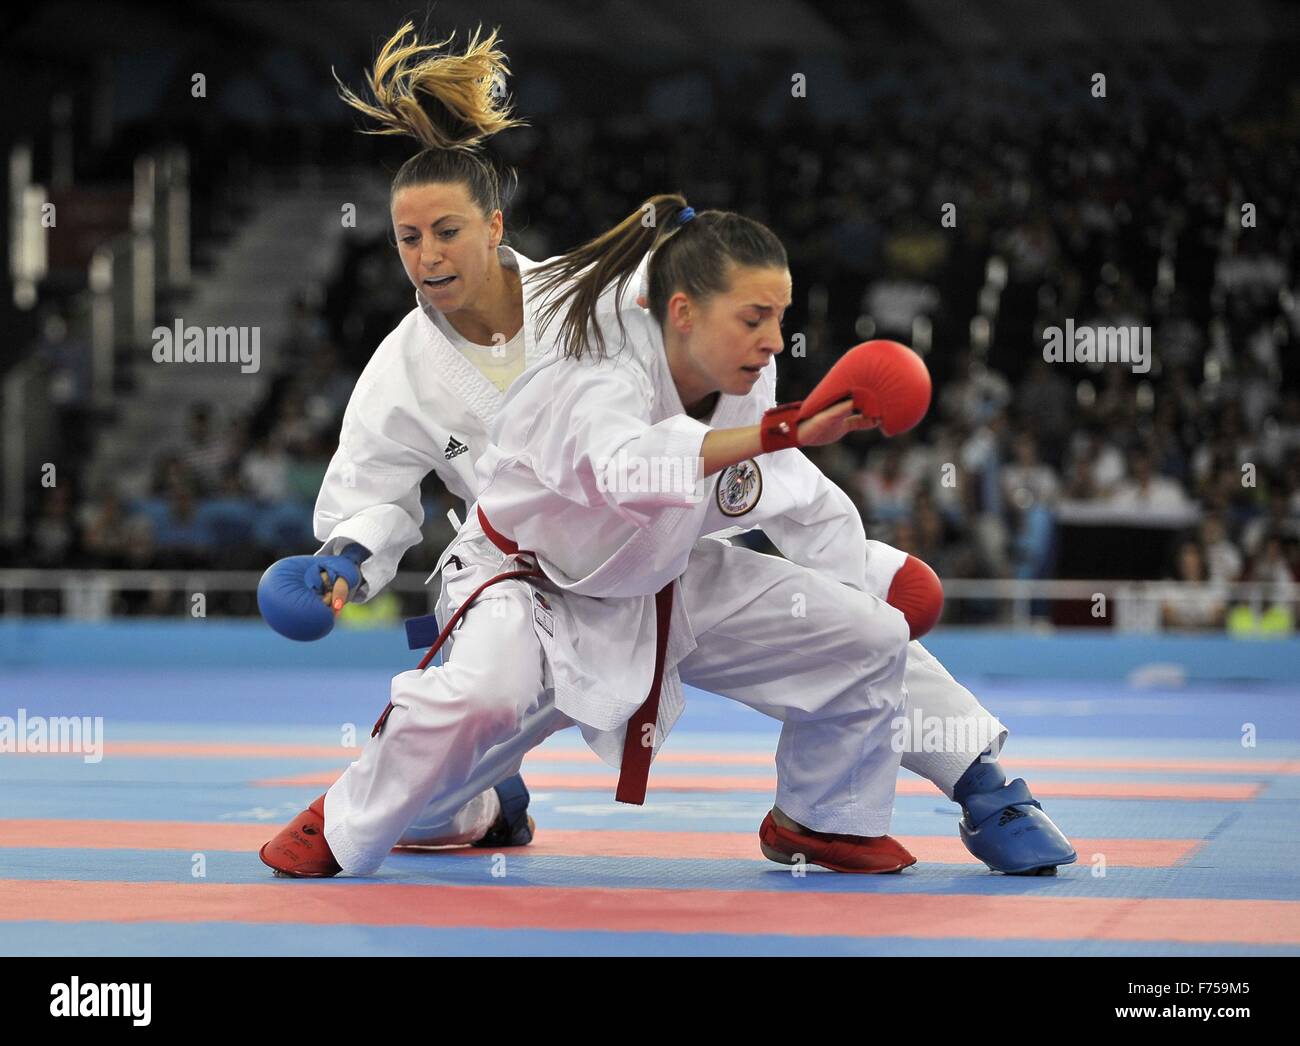 Bettina Plank (AUT, rojo) y Alexandra Recchia (FRA). Womens 50Kg. El Karate. Crystal Hall 3. Bakú. Azerbaiyán. Bakú2015. 1 Juegos de Europa. 13/06/2015. Foto de stock